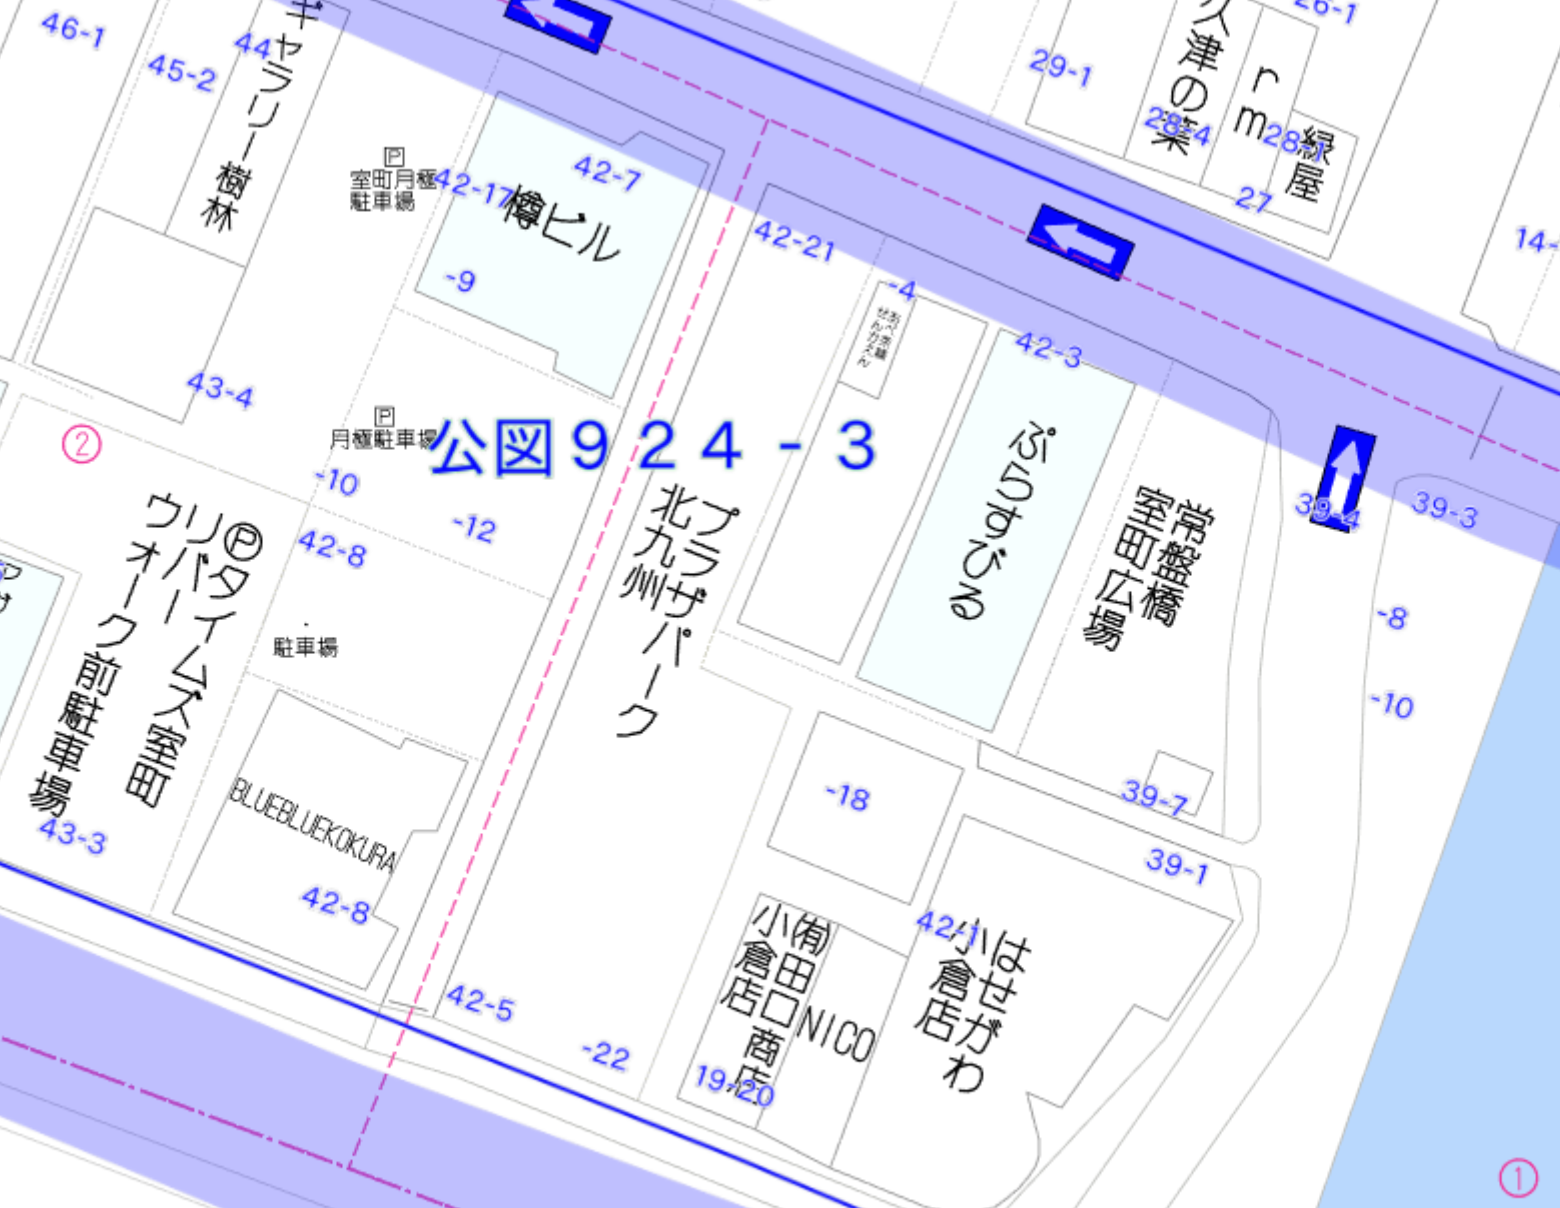 ブルーマップ | ZENRIN Maps API